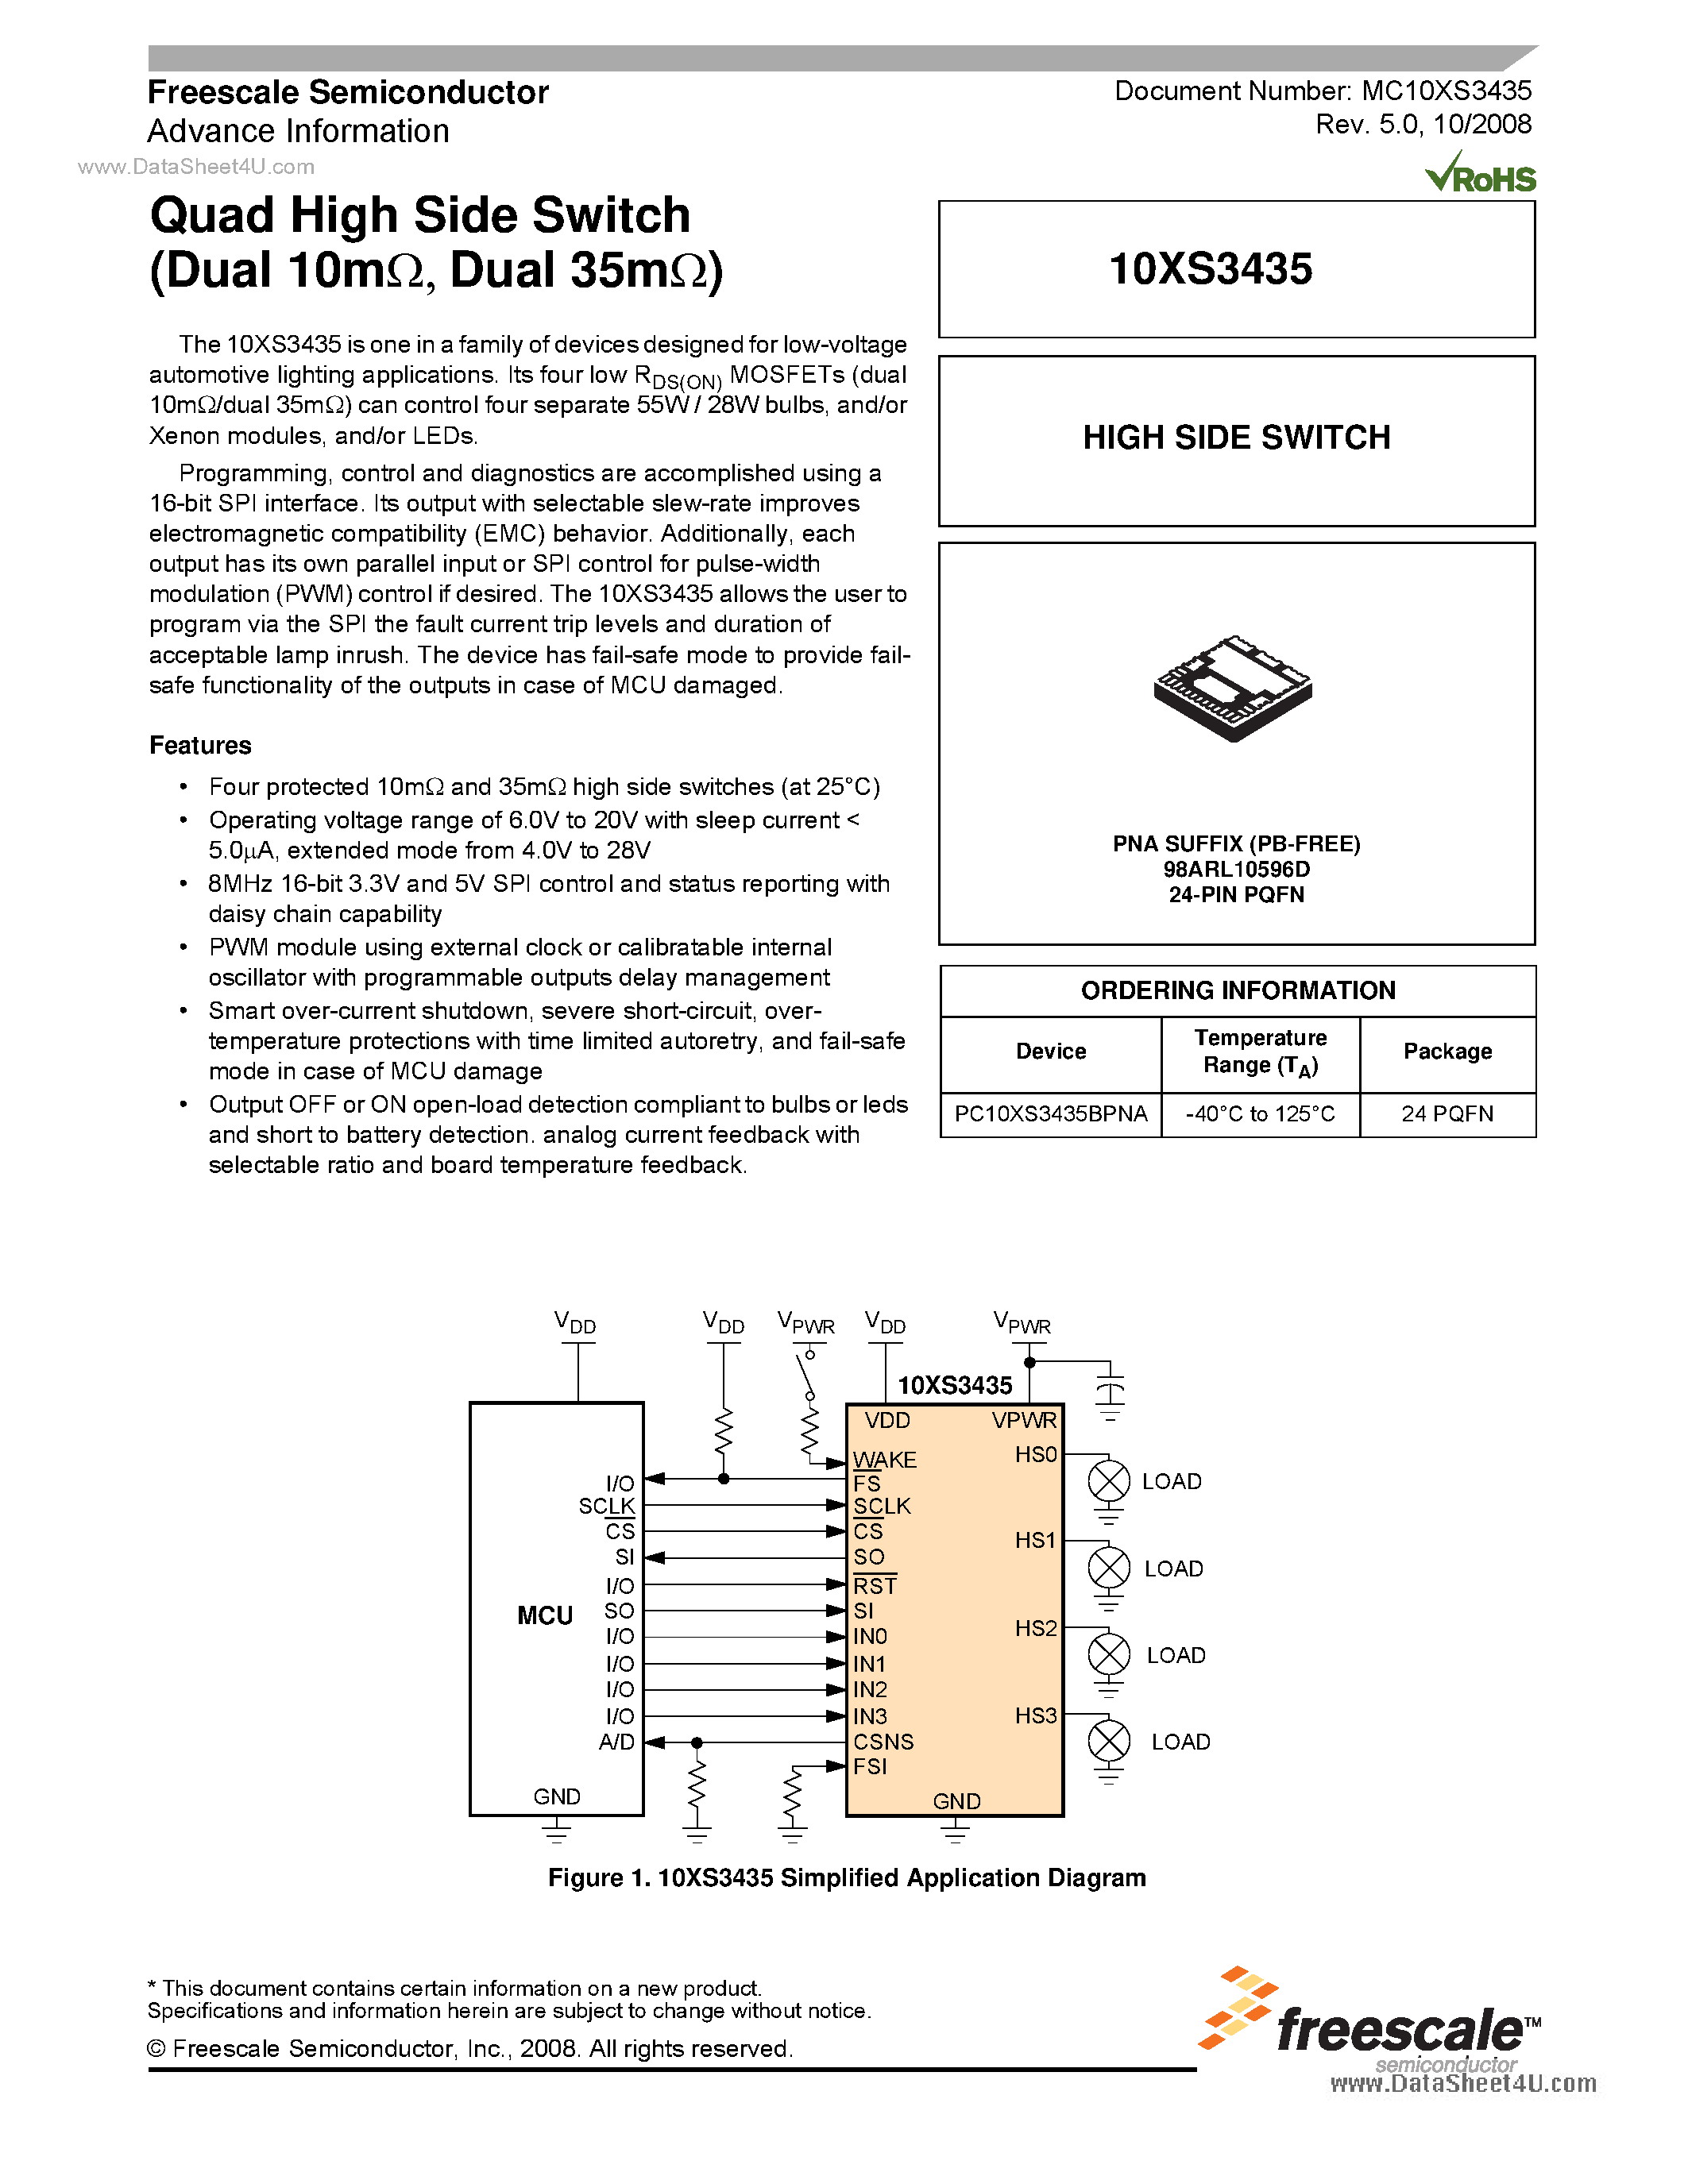 Даташит MC10XS3435 - Quad High Side Switch страница 1